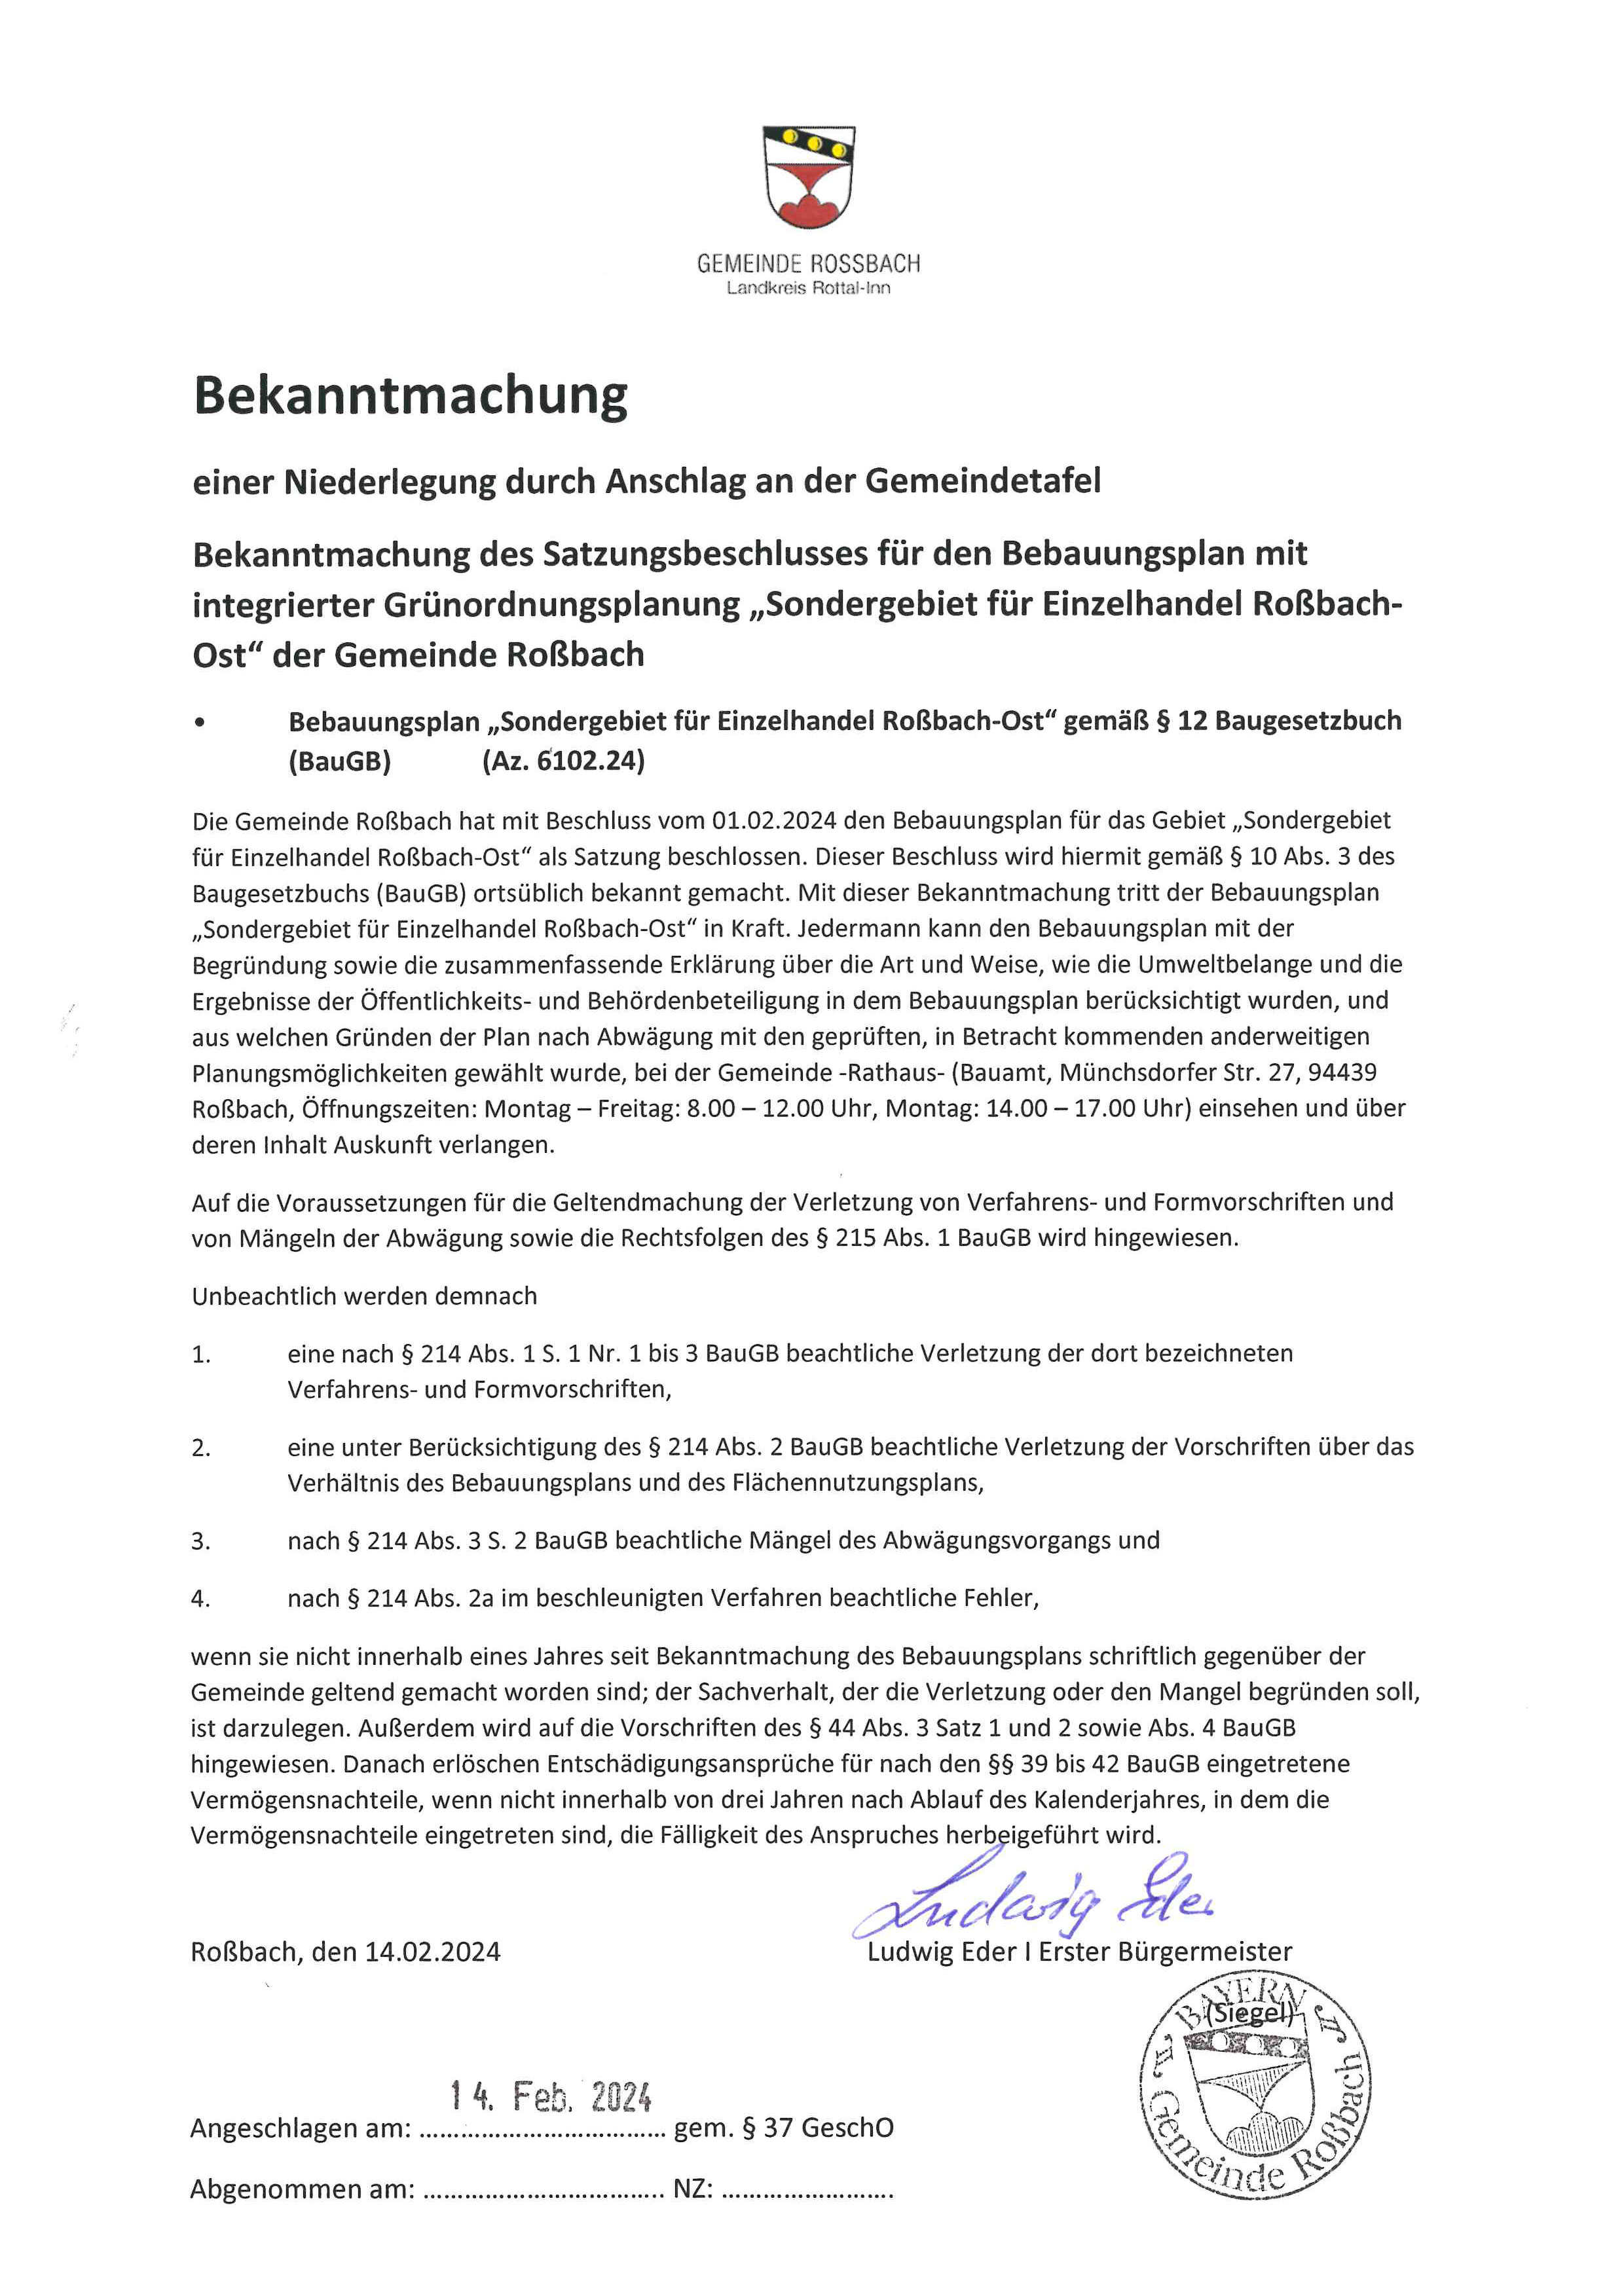 Bekanntmachung des Satzungsbeschlusses für den Bebauungsplan mit integrierter Grünordnungsplanung Sondergebiet für Einzelhandel Roßbach-Ost